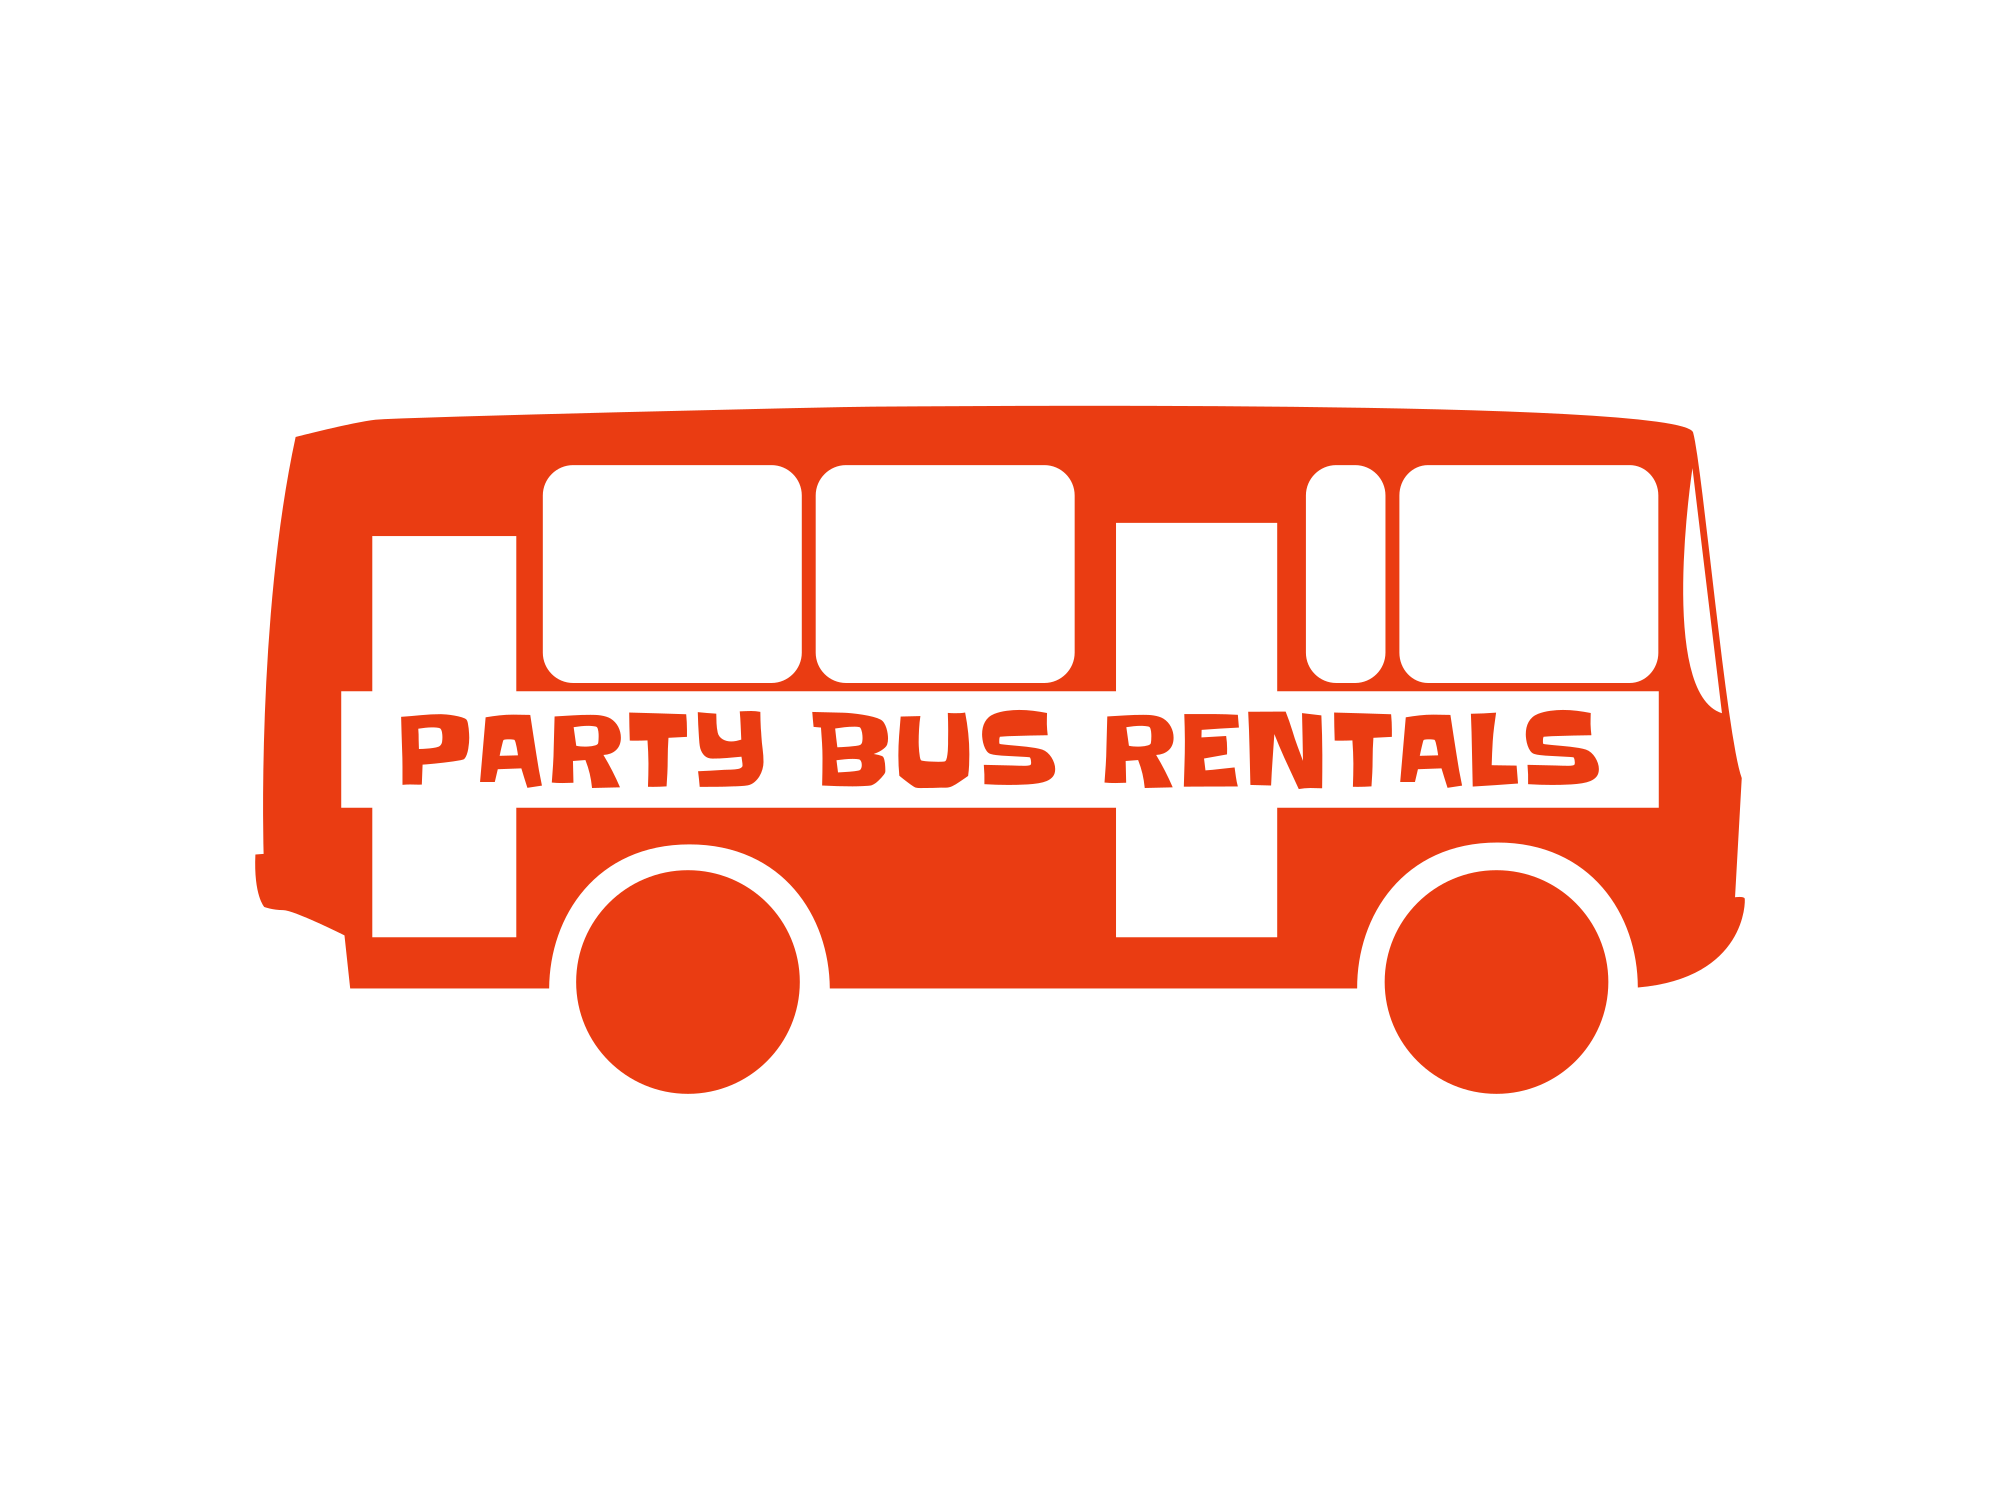 Party Bus Rentals in Orlando | PartyBusRentals.com